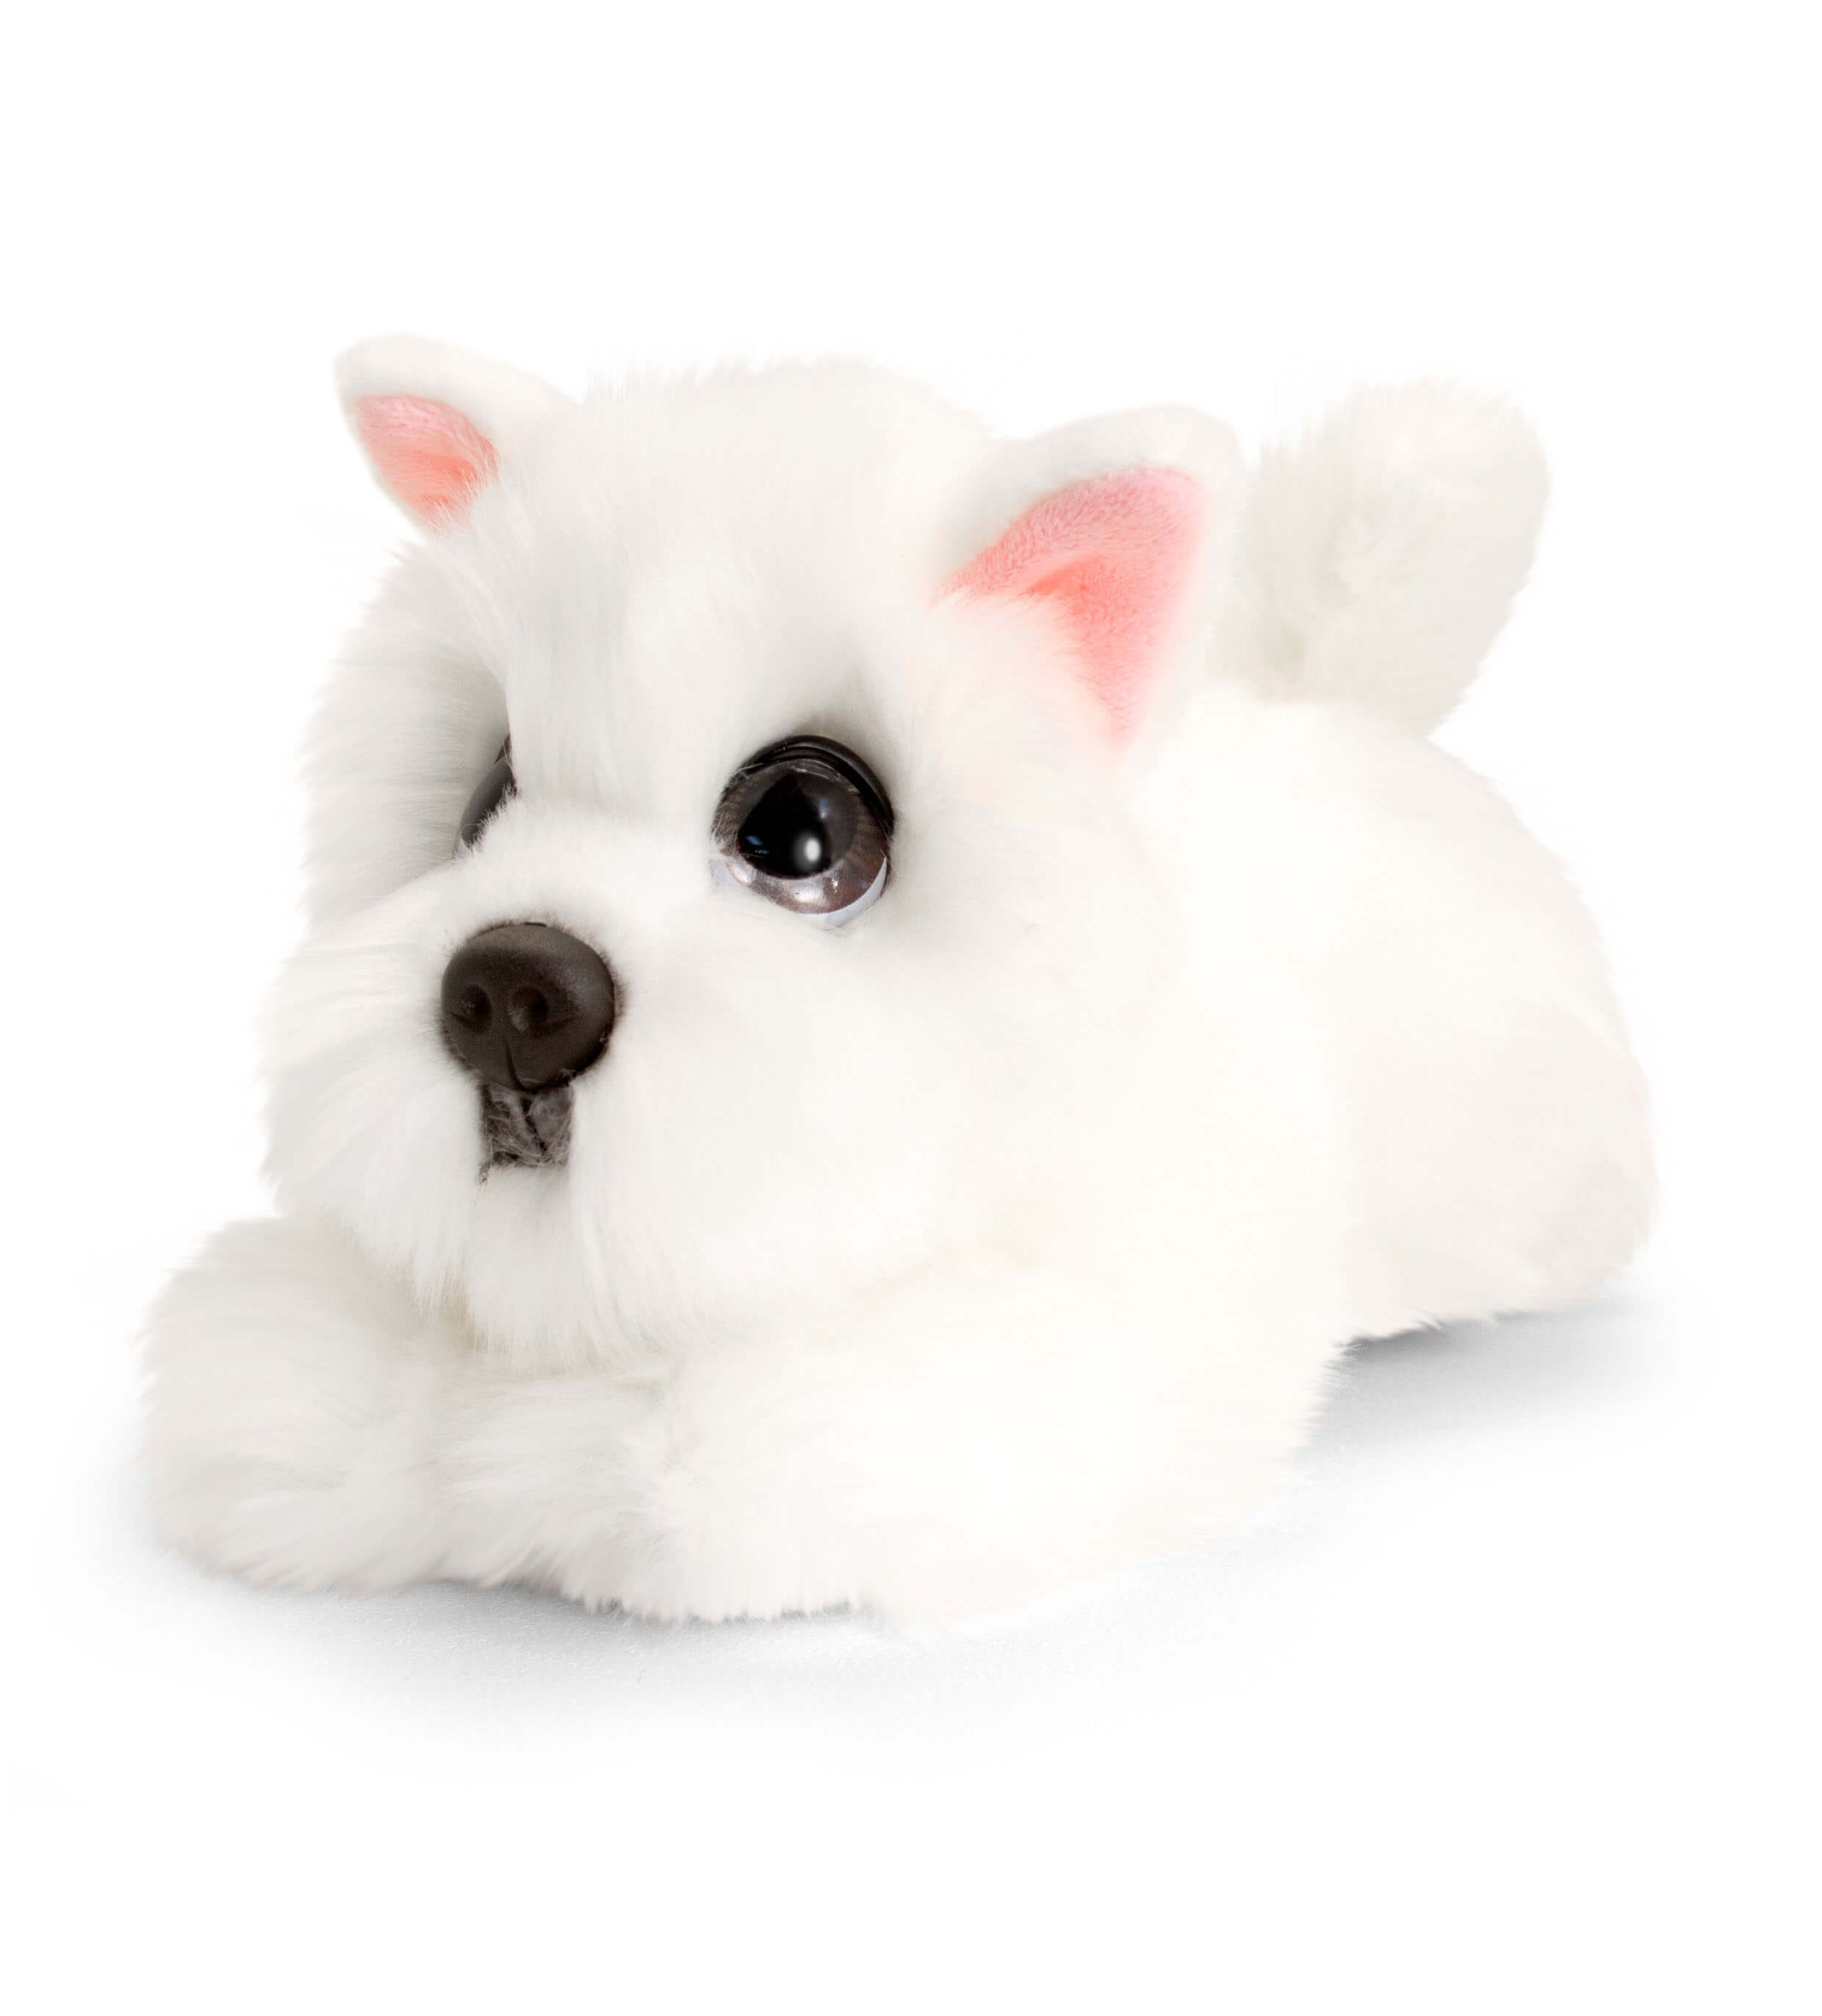 cuddly puppy toy